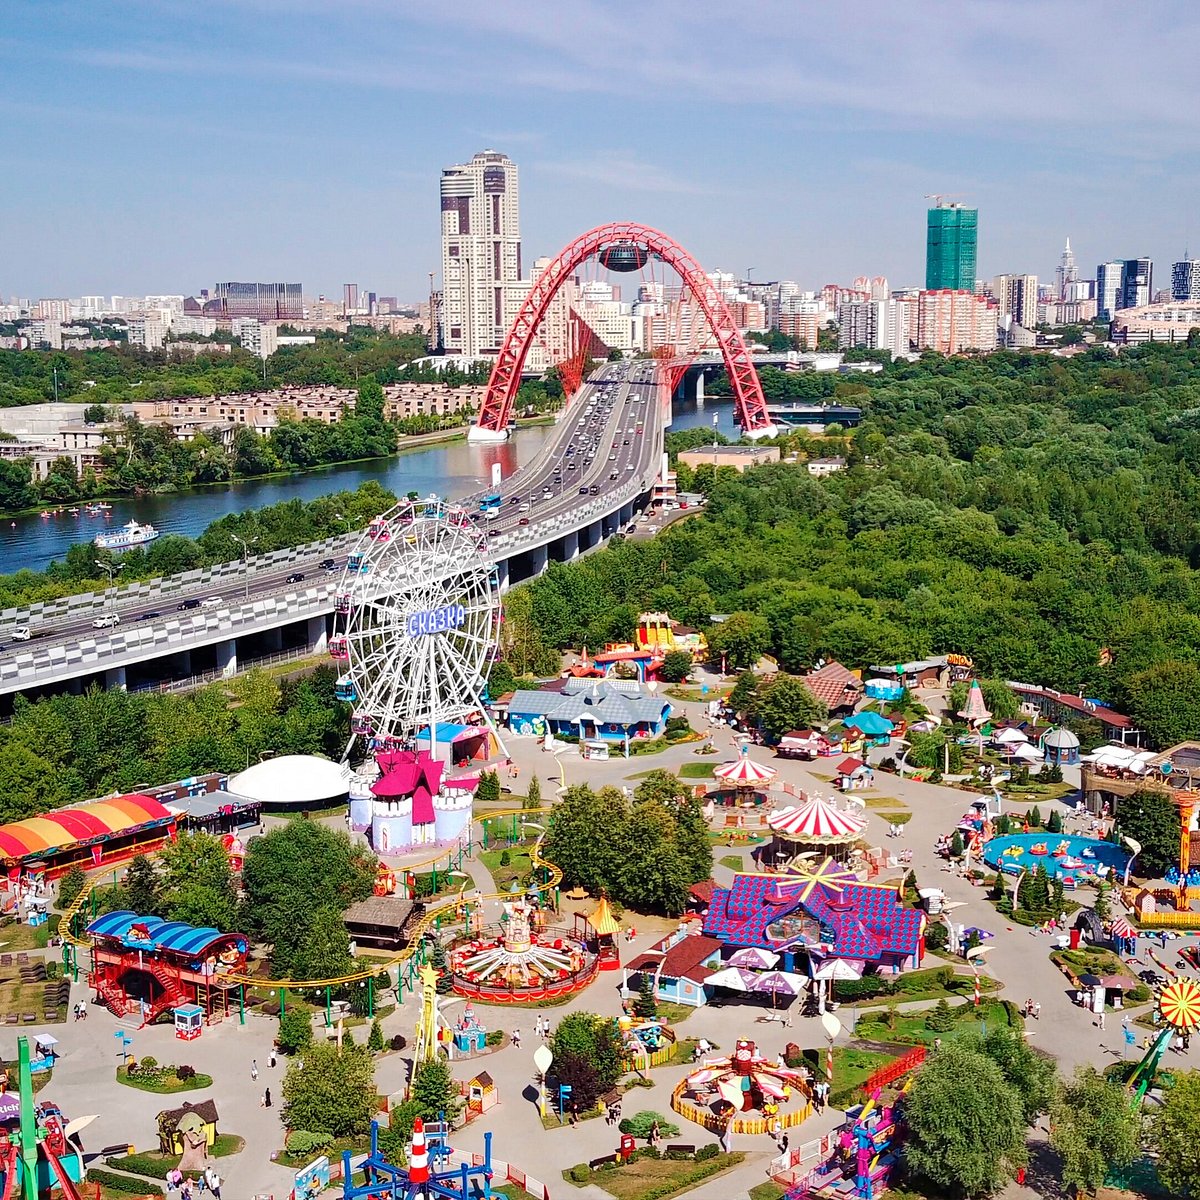 Парк сказка в москве официальный сайт фото